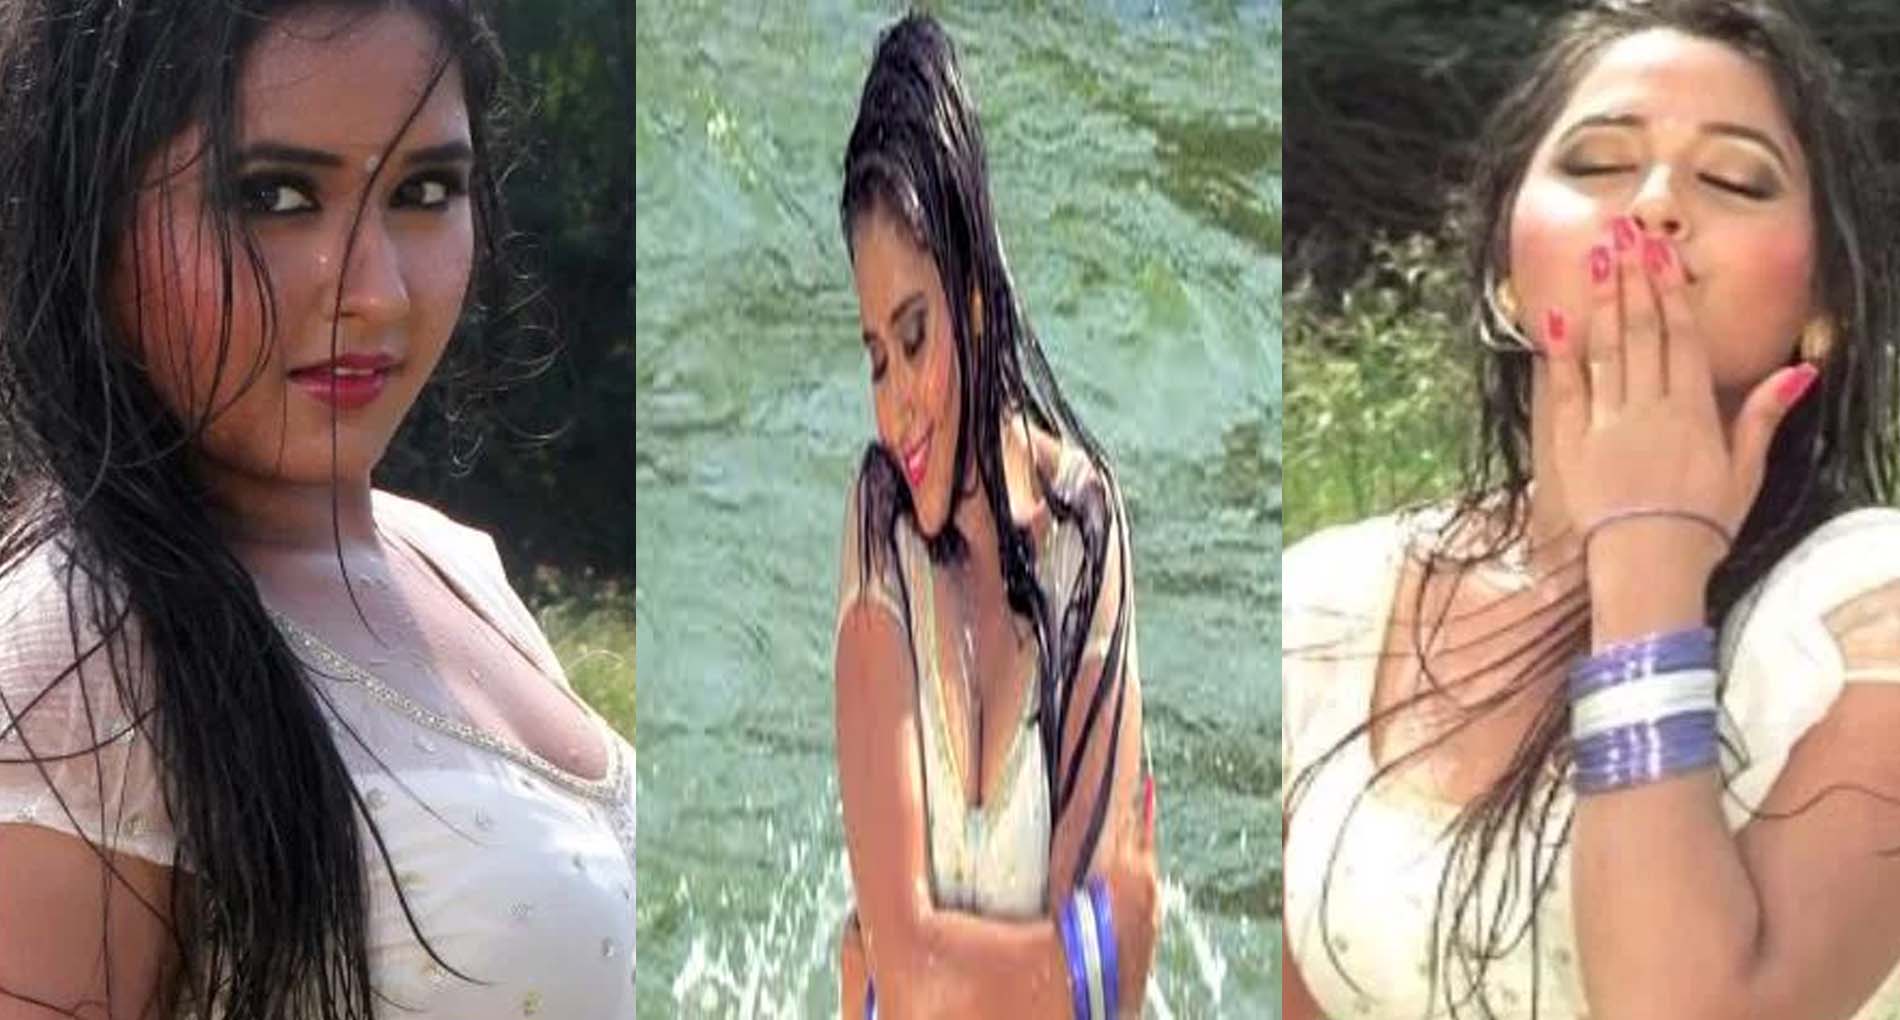 Kajal Raghwani Bhojpuri Sex Video - Kajal Raghwani Hot Video: à¤•à¤¾à¤œà¤² à¤°à¤¾à¤˜à¤µà¤¾à¤¨à¥€ à¤•à¥‡ à¤¹à¥‰à¤Ÿ à¤µà¥€à¤¡à¤¿à¤¯à¥‹ à¤¨à¥‡ à¤¬à¤¢à¤¼à¤¾à¤¯à¤¾ à¤¤à¤¾à¤ªà¤®à¤¾à¤¨,  à¤¦à¥‡à¤–à¥‡à¤‚ Video